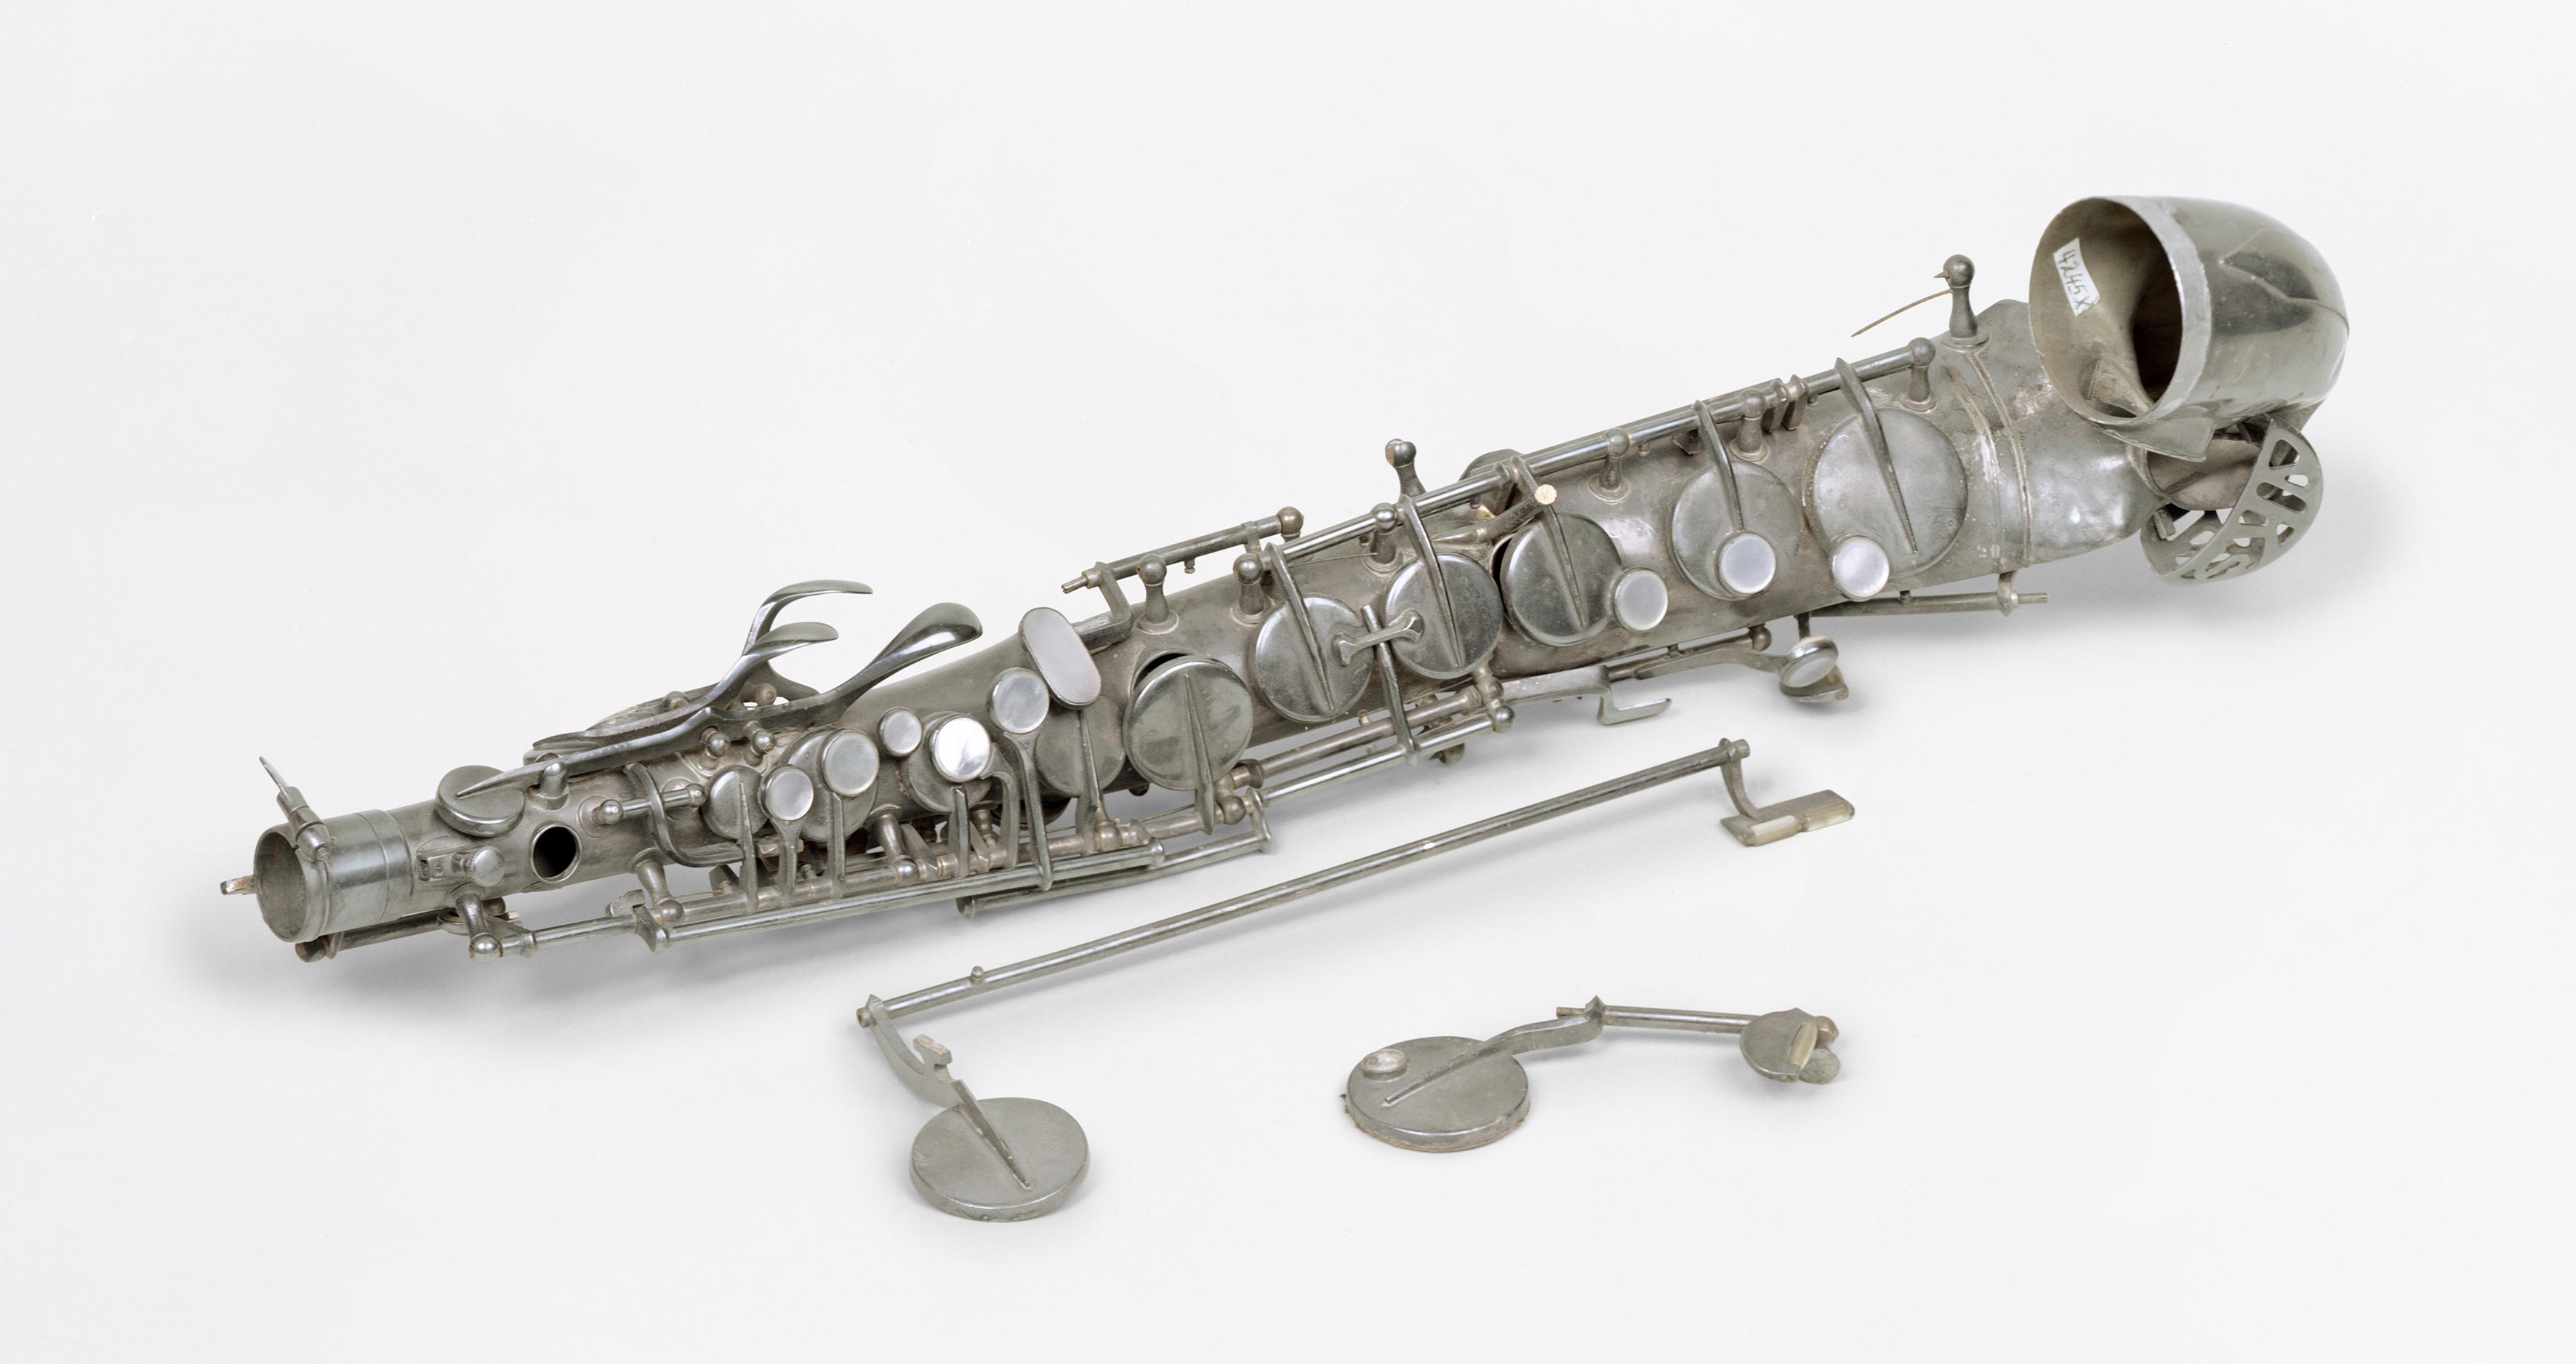 <p><strong>Image credit:</strong><br />
<strong>Susan Philipsz,</strong> <em>War Damaged Musical Instruments, Altsaxophon (ruin)</em>, 2015. Collection Musikinstrumenten Museum Berlin.</p>